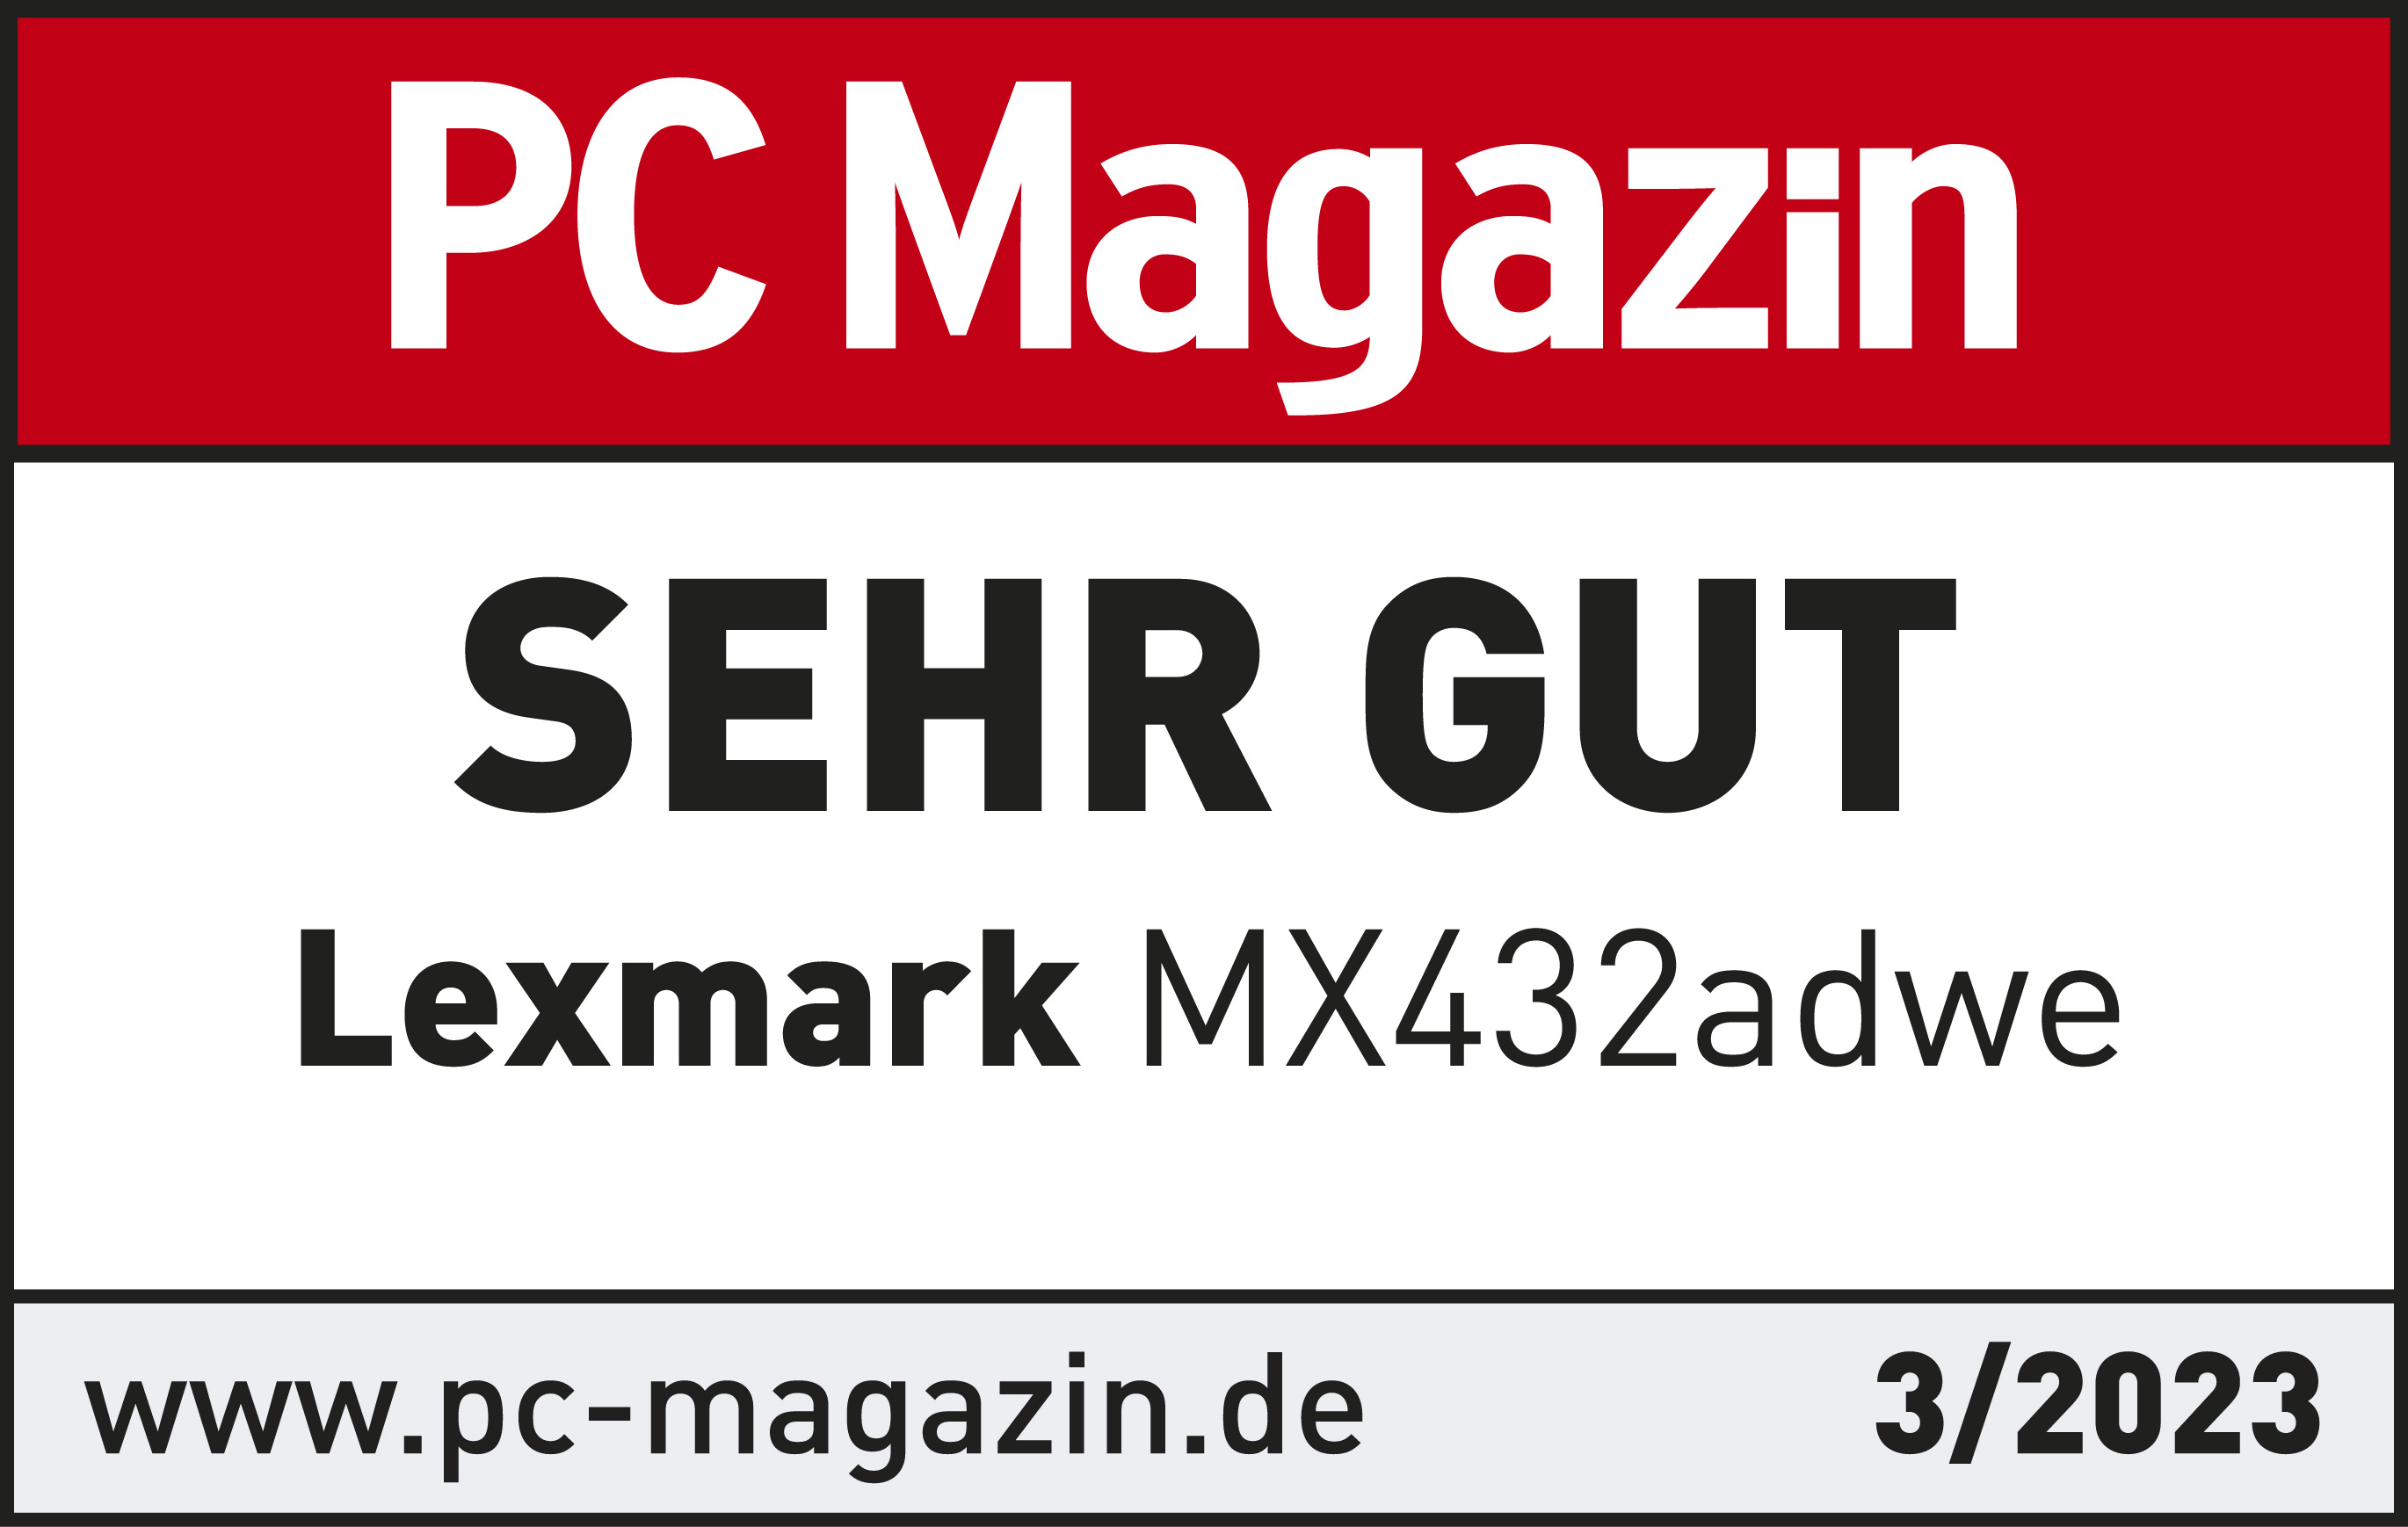 PC Magazin Award 2023